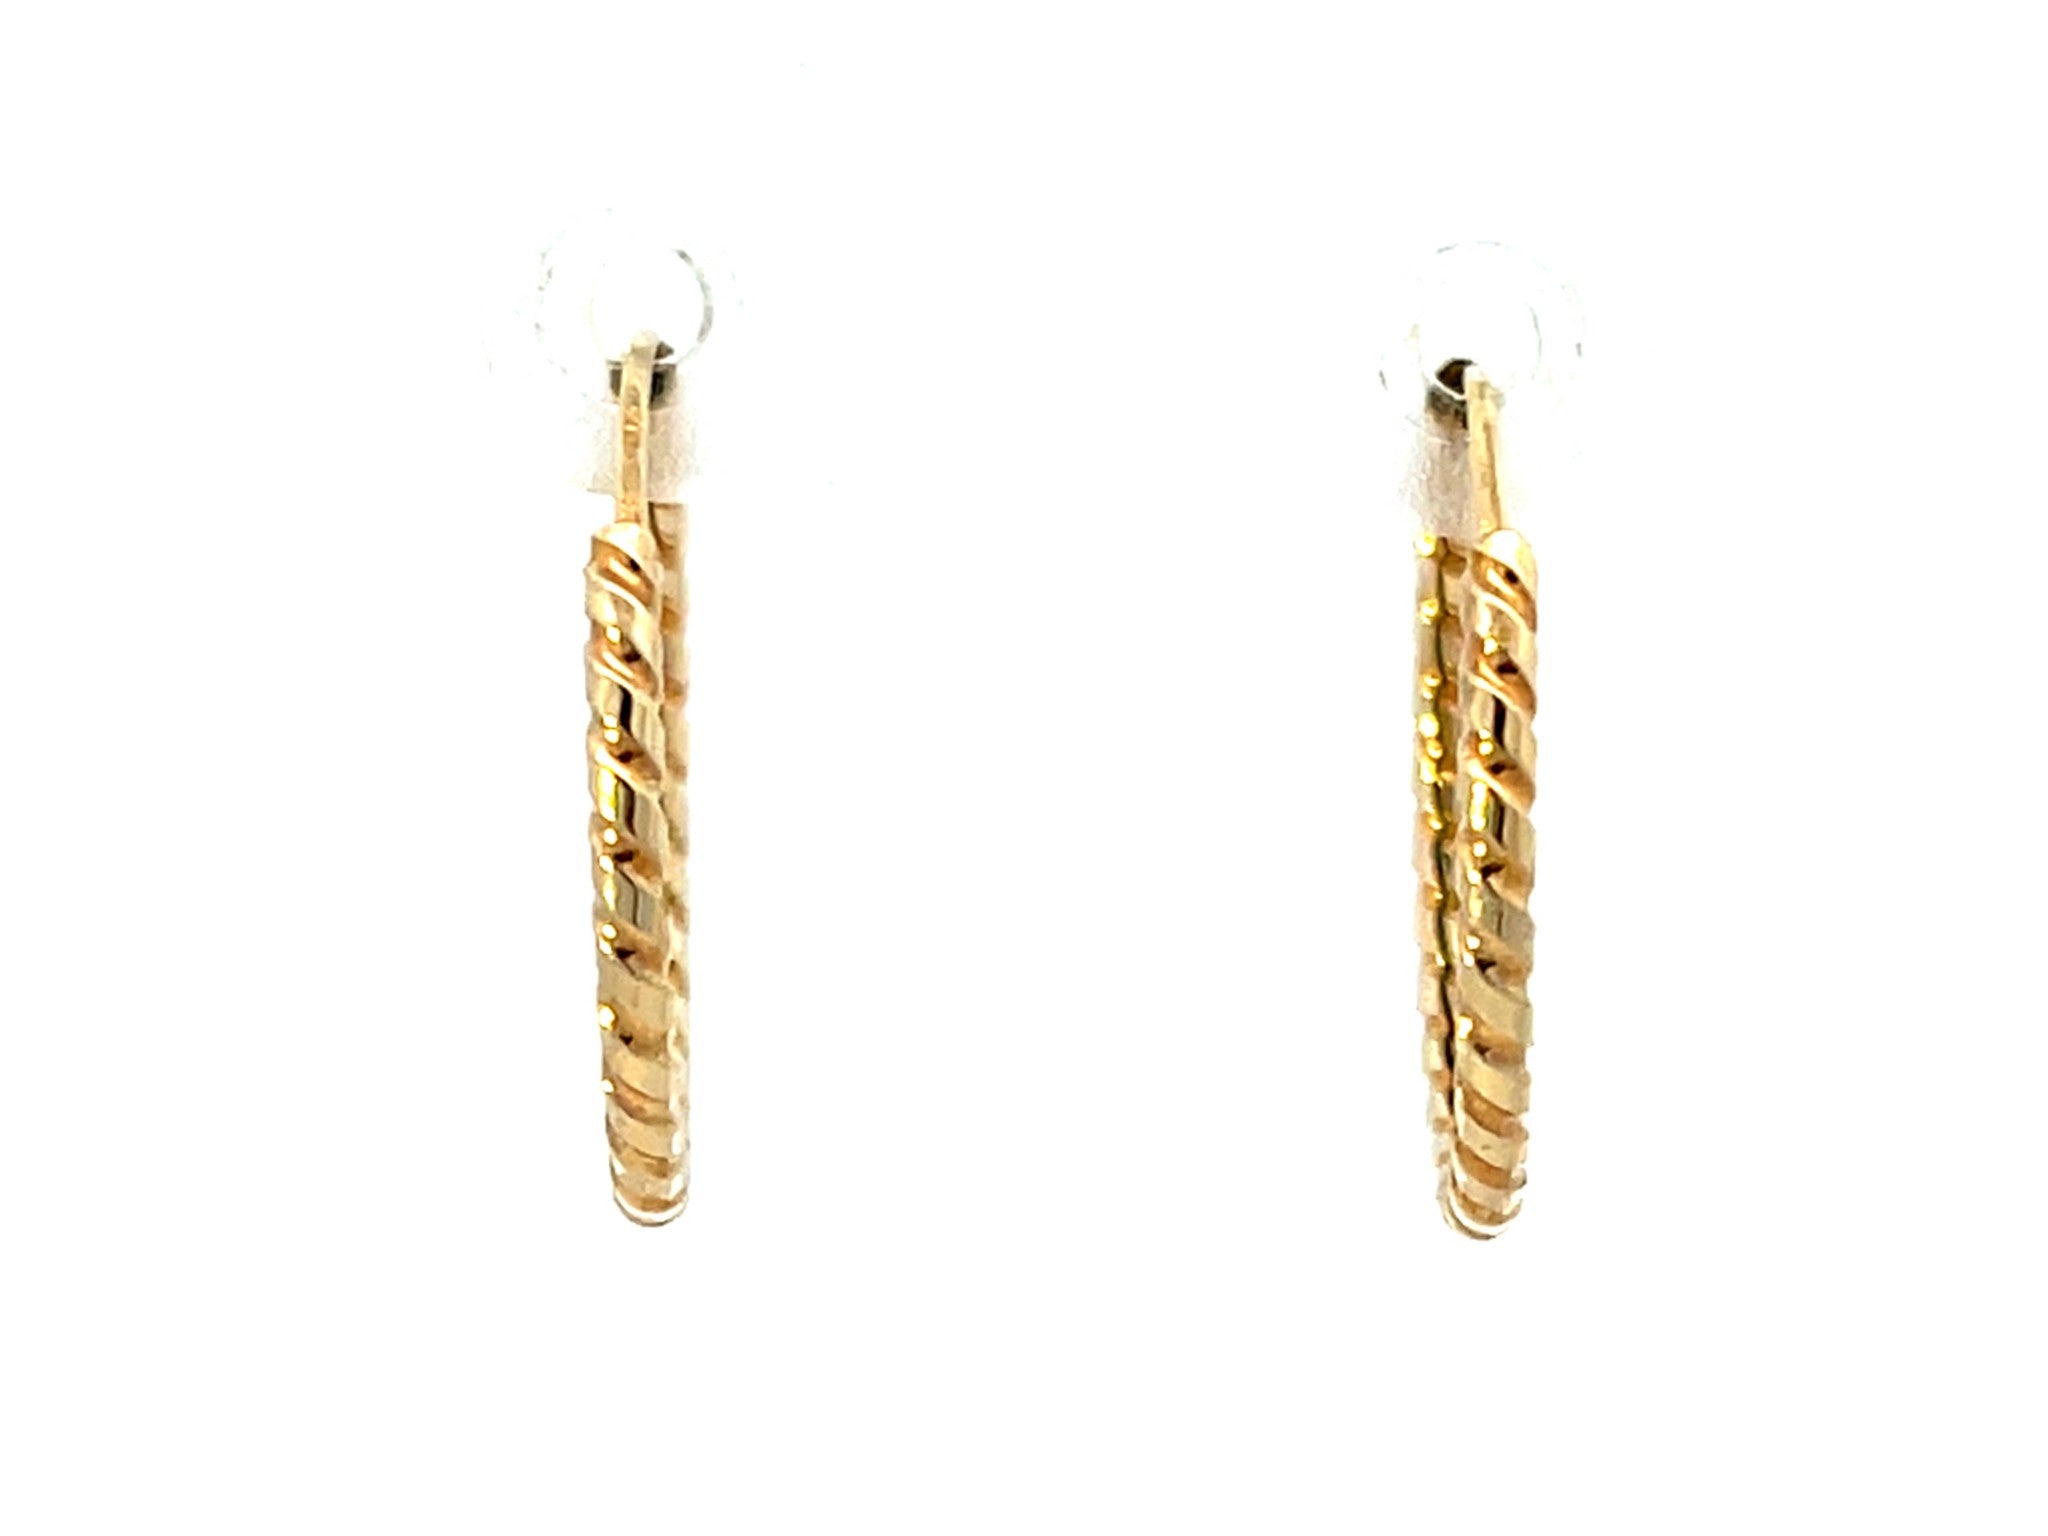 Solid 14K Yellow Gold Swirl Hoop Earrings